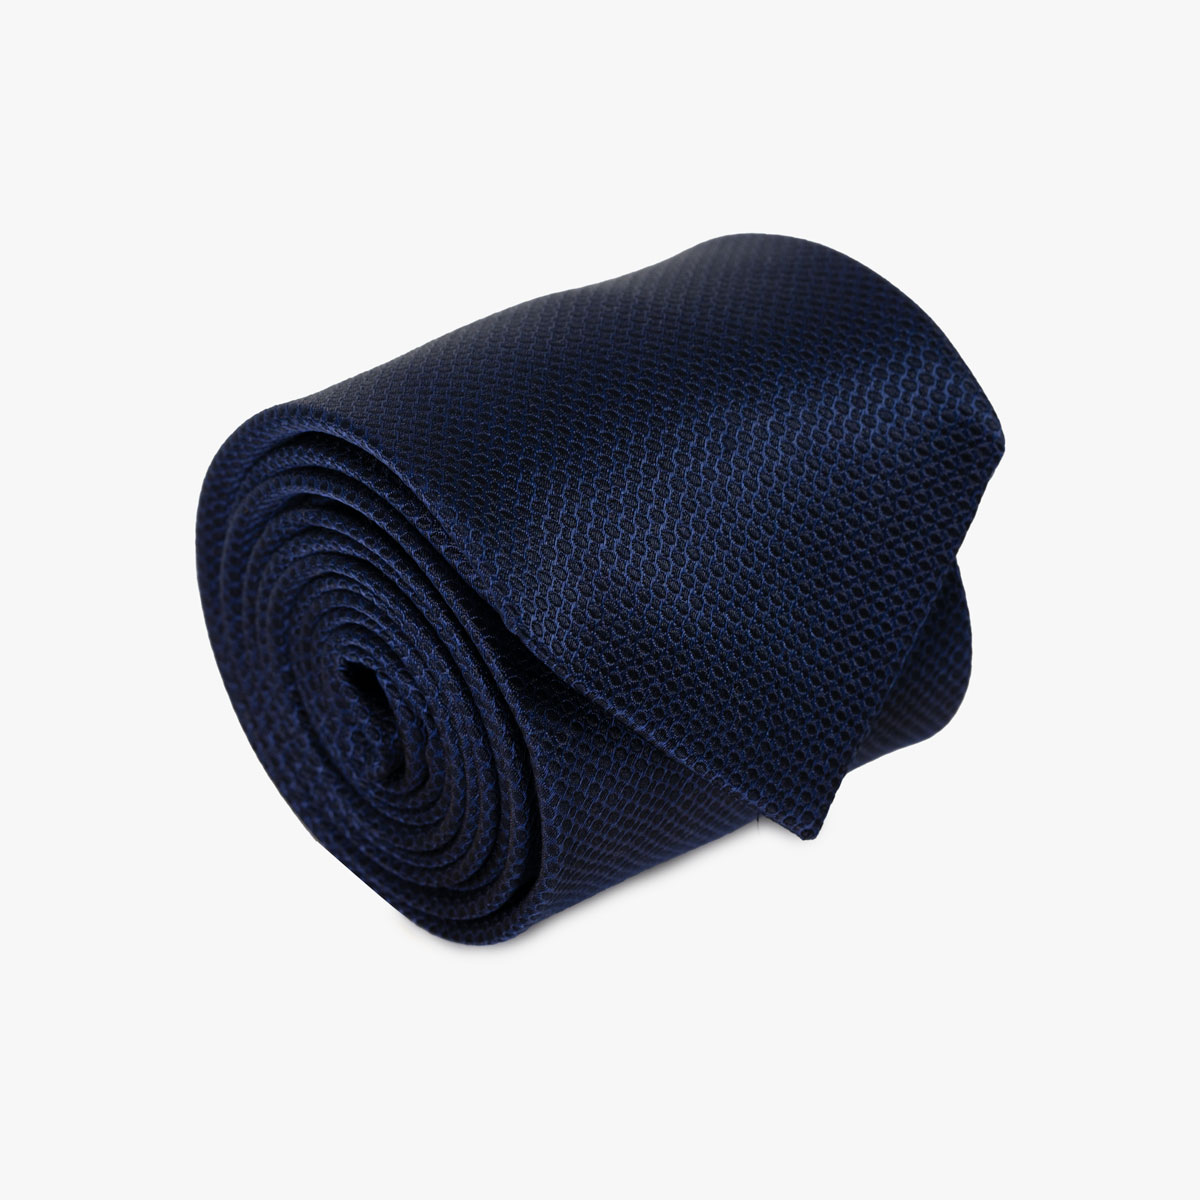 Krawatte mit Muster und Struktur in blau